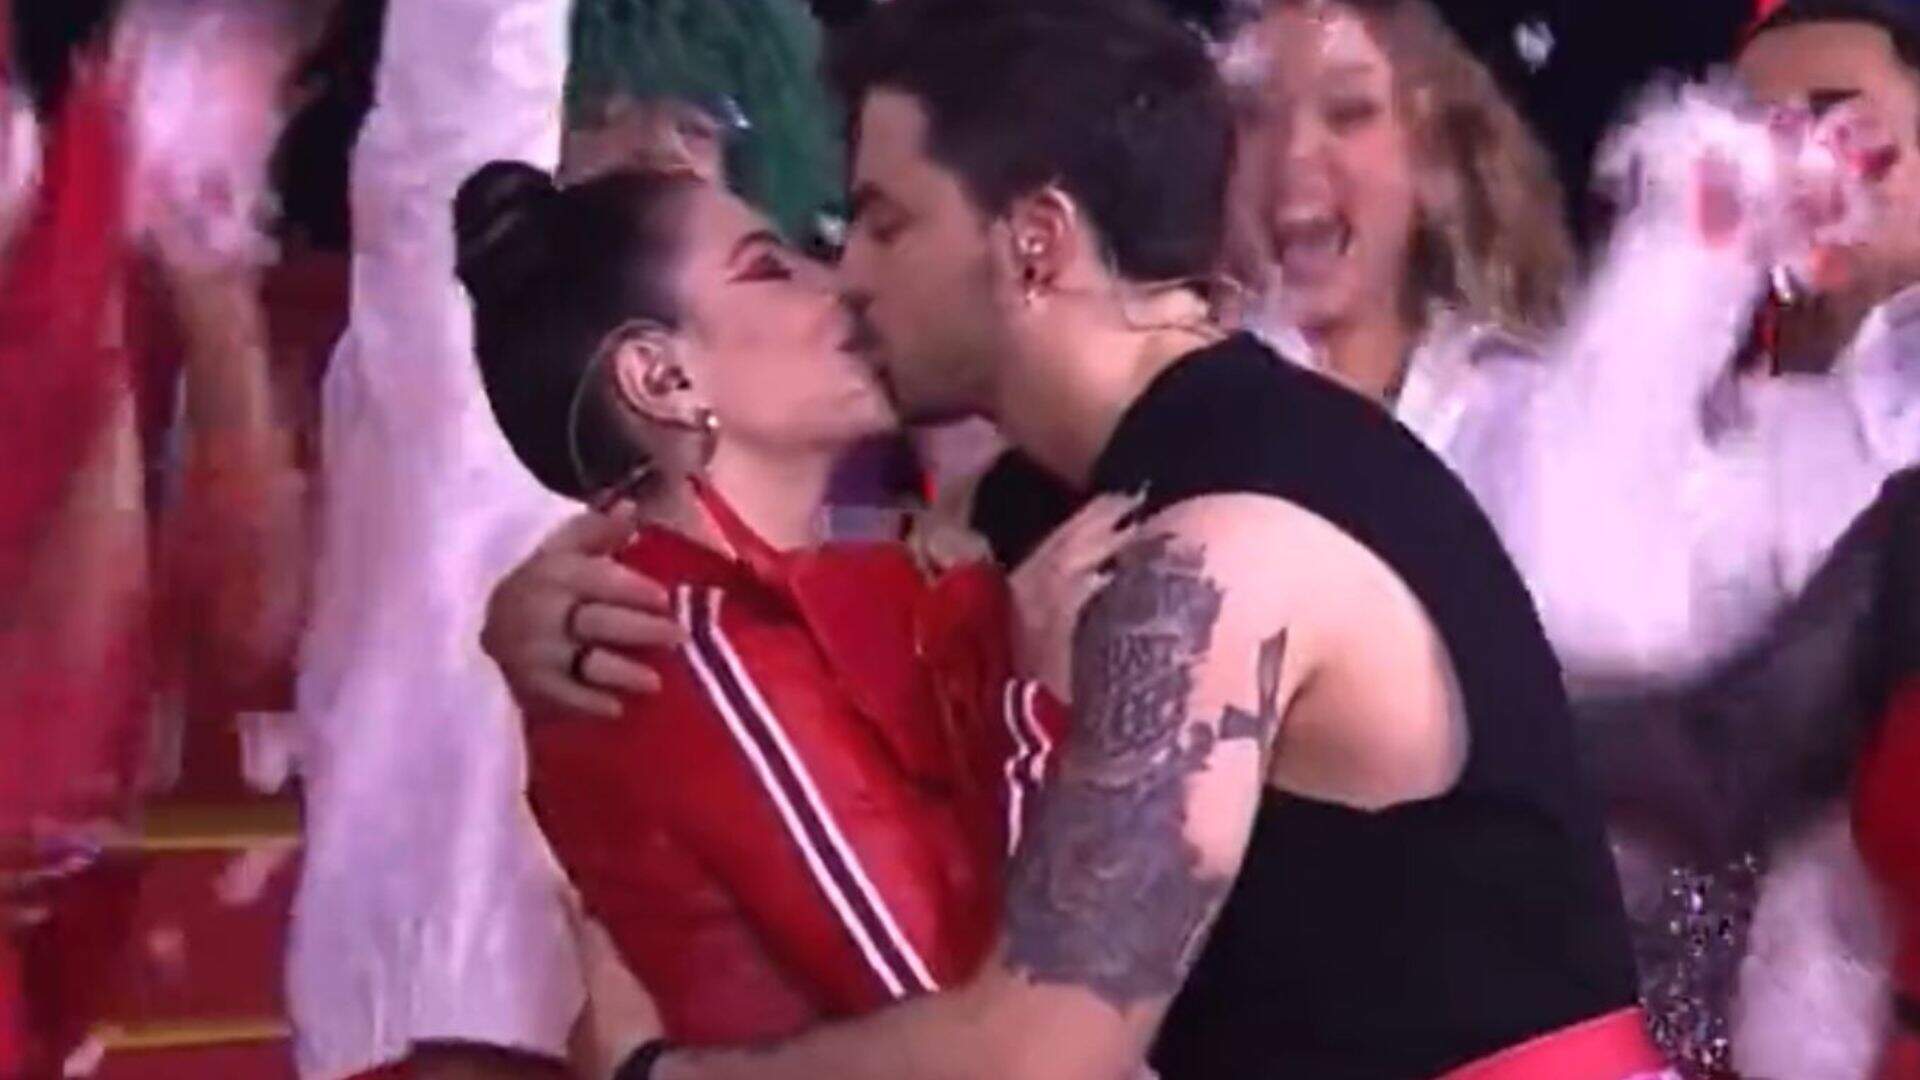 Biscoitagem? Web critica beijo de Gkay e Felipe Neto durante live - Metropolitana FM